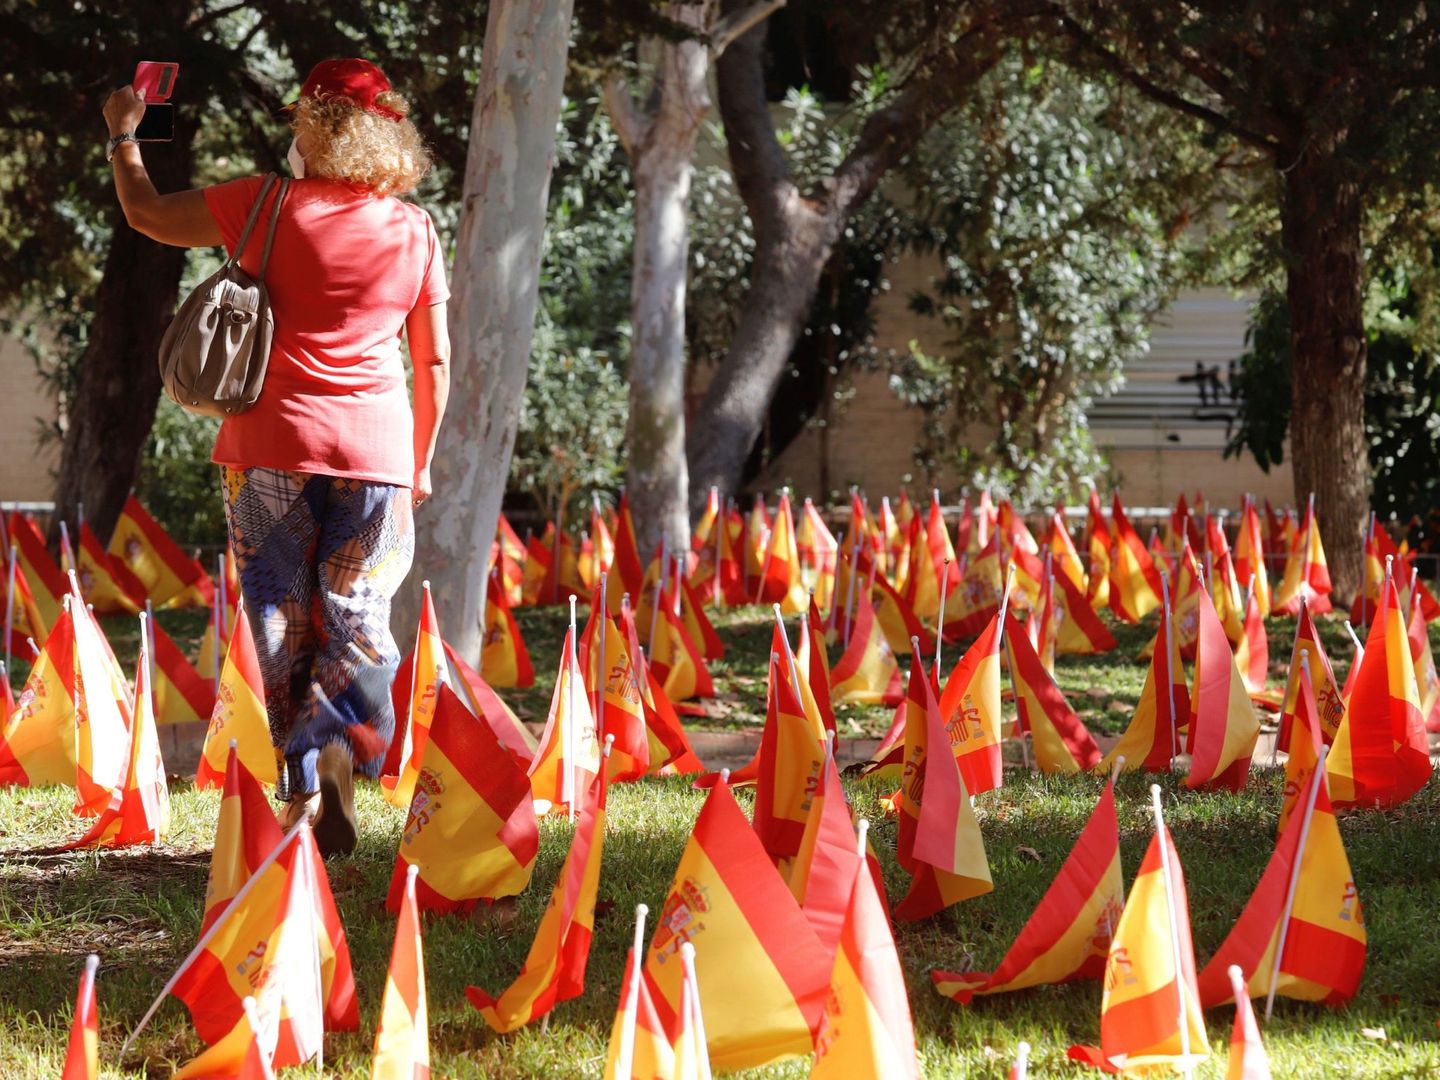 La Asociación Nacional de Víctimas y Afectados por Coronavirus ha plantado en la mediana ajardinada de una de las principales avenidas de Murcia miles de banderas de España en homenaje simbólico a los fallecidos. (EFE)